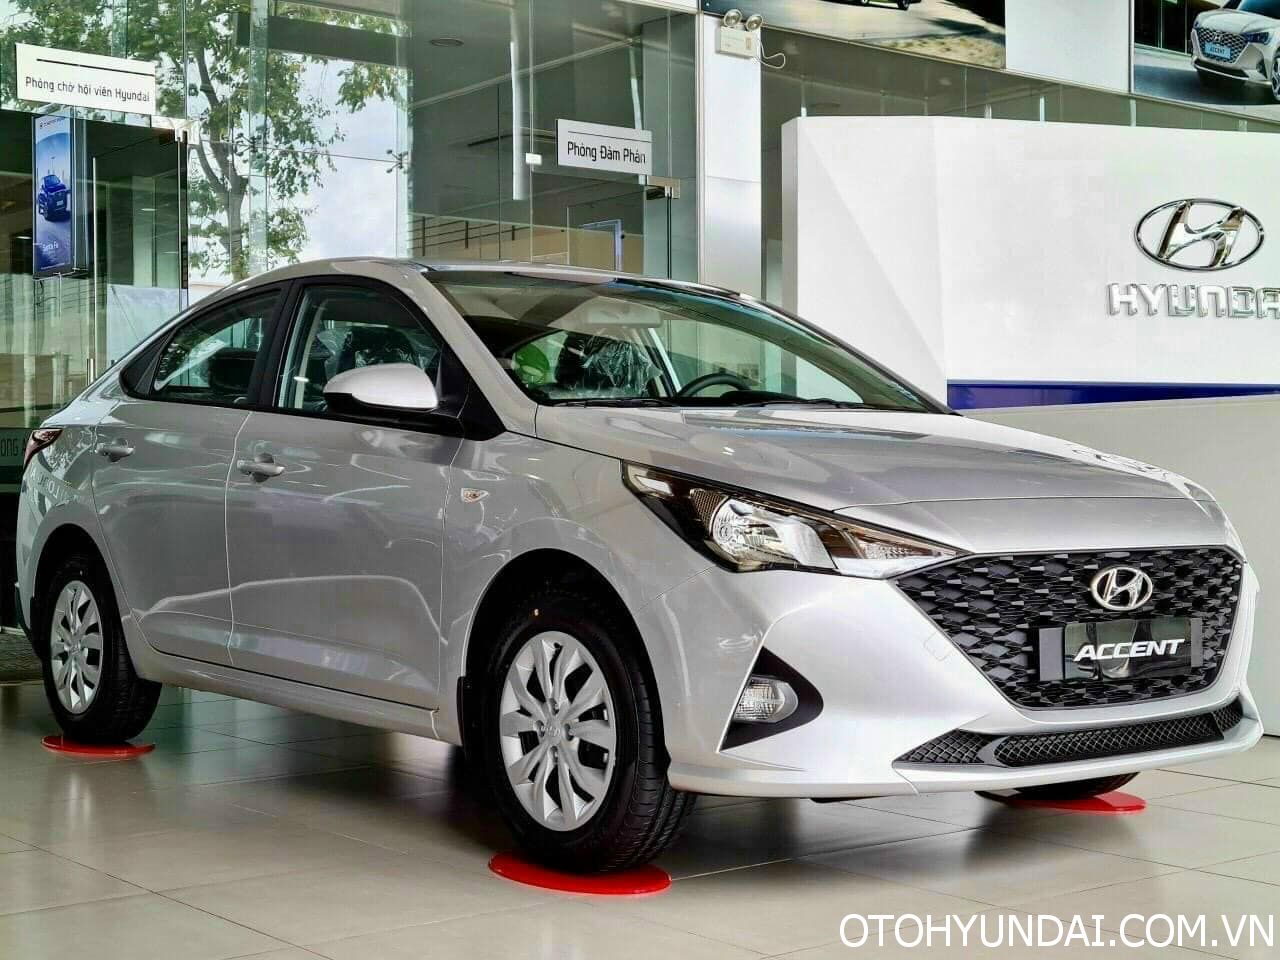 Lốp xe Hyundai Accent tại Hà Nội dịch vụ uy tín giá tốt